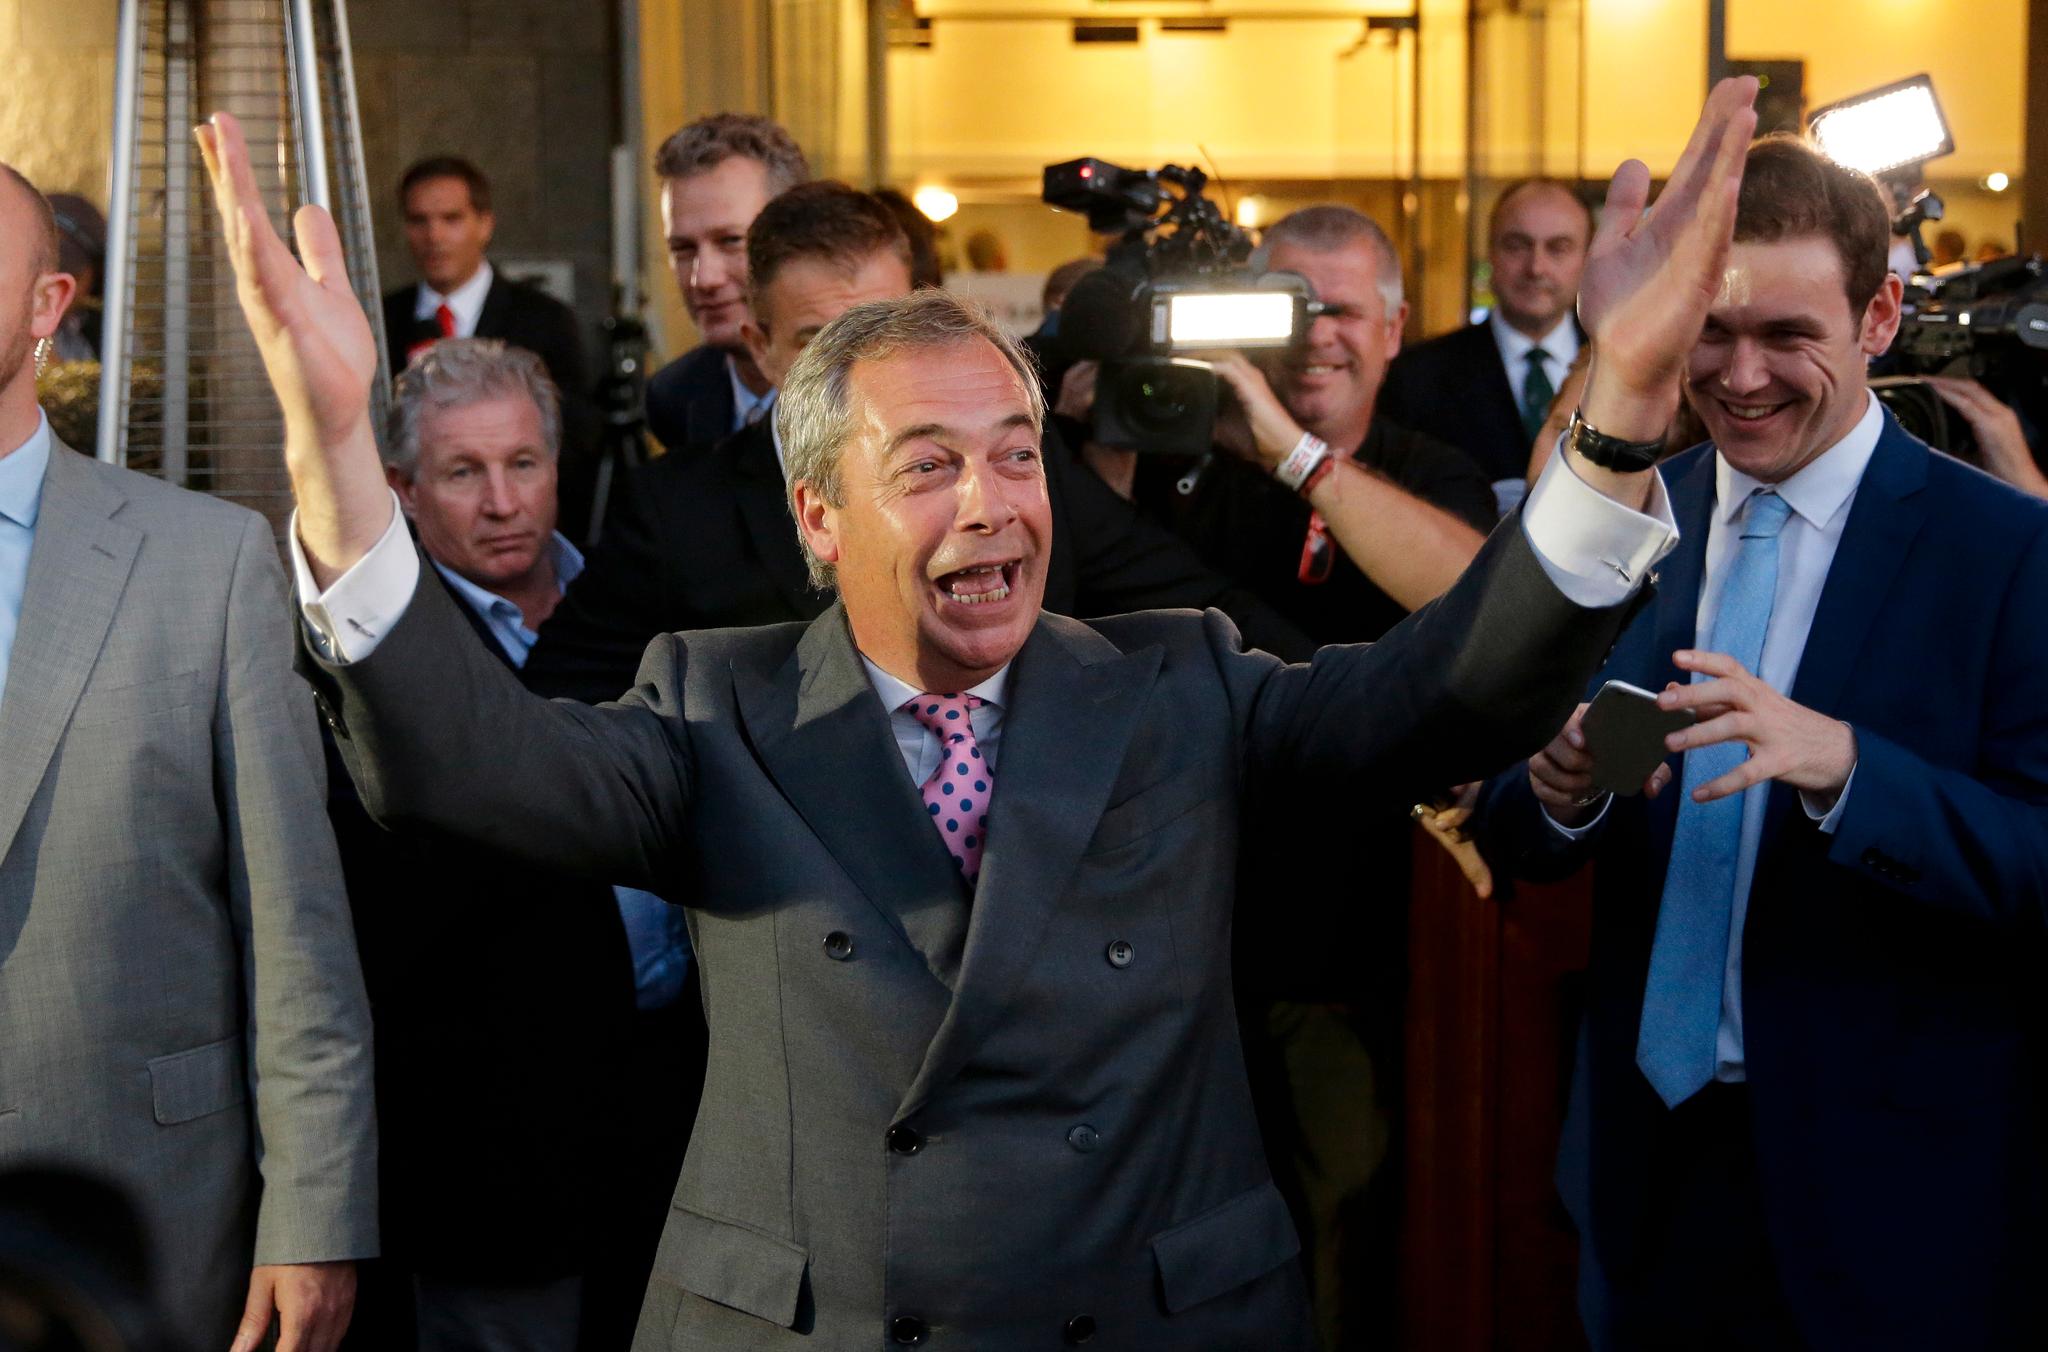 UKIP-lederen Nigel Farage, en av nei-generalene, er henrykt. Han var sikker på seier allerede før Sky News og BBC ga nei-siden vinneren.